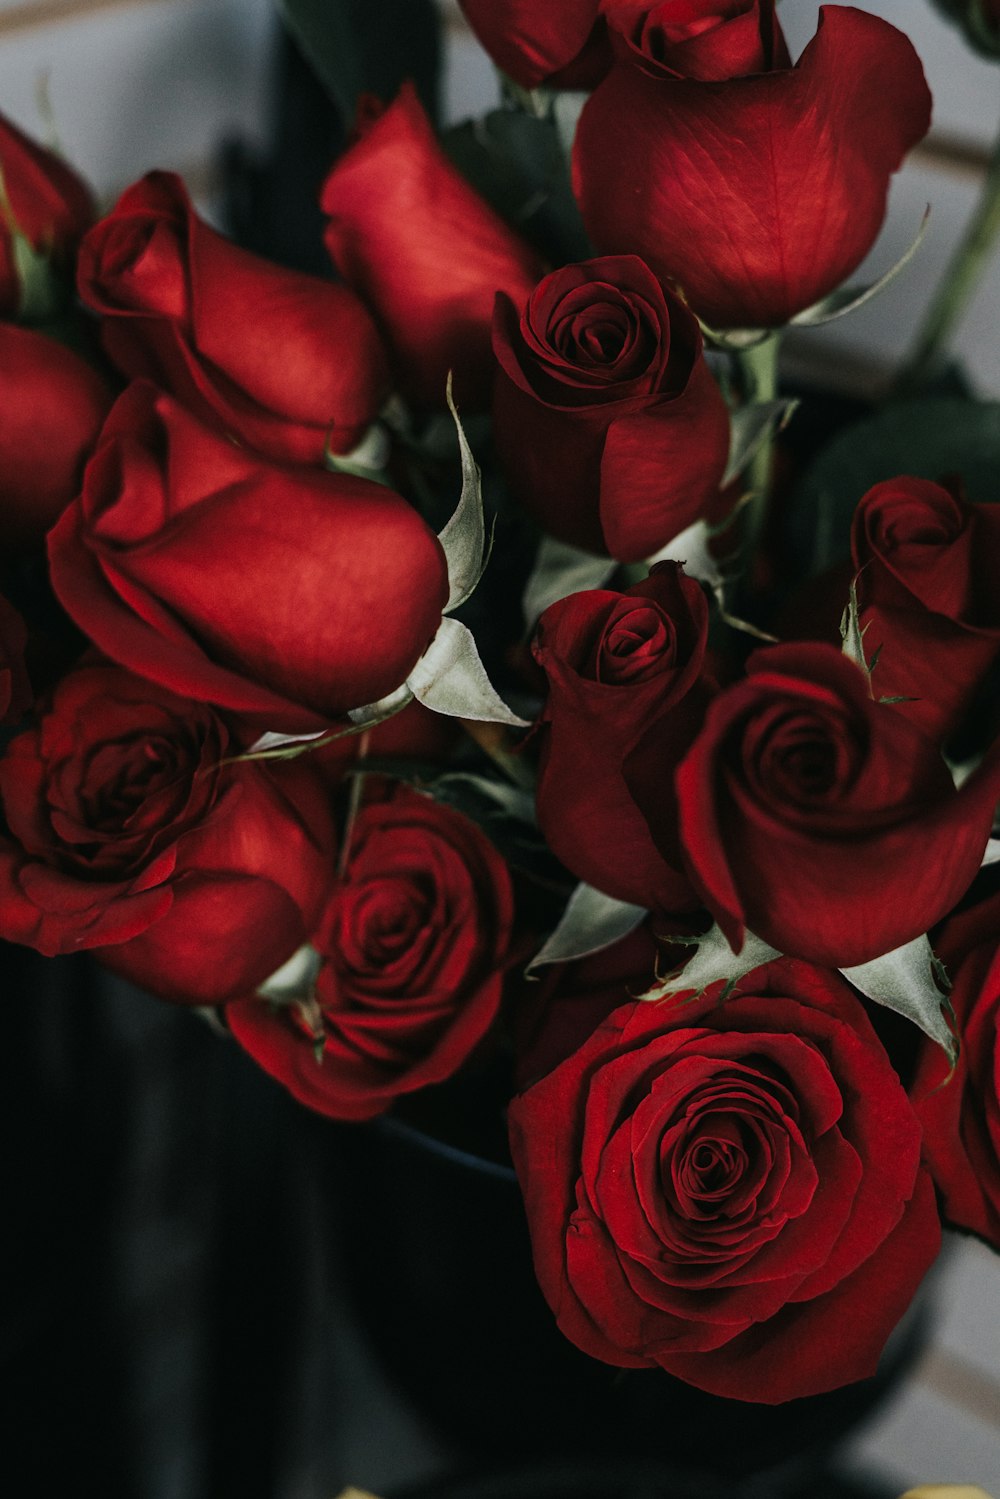 27+ Roses Images | Download Free Images on Unsplash